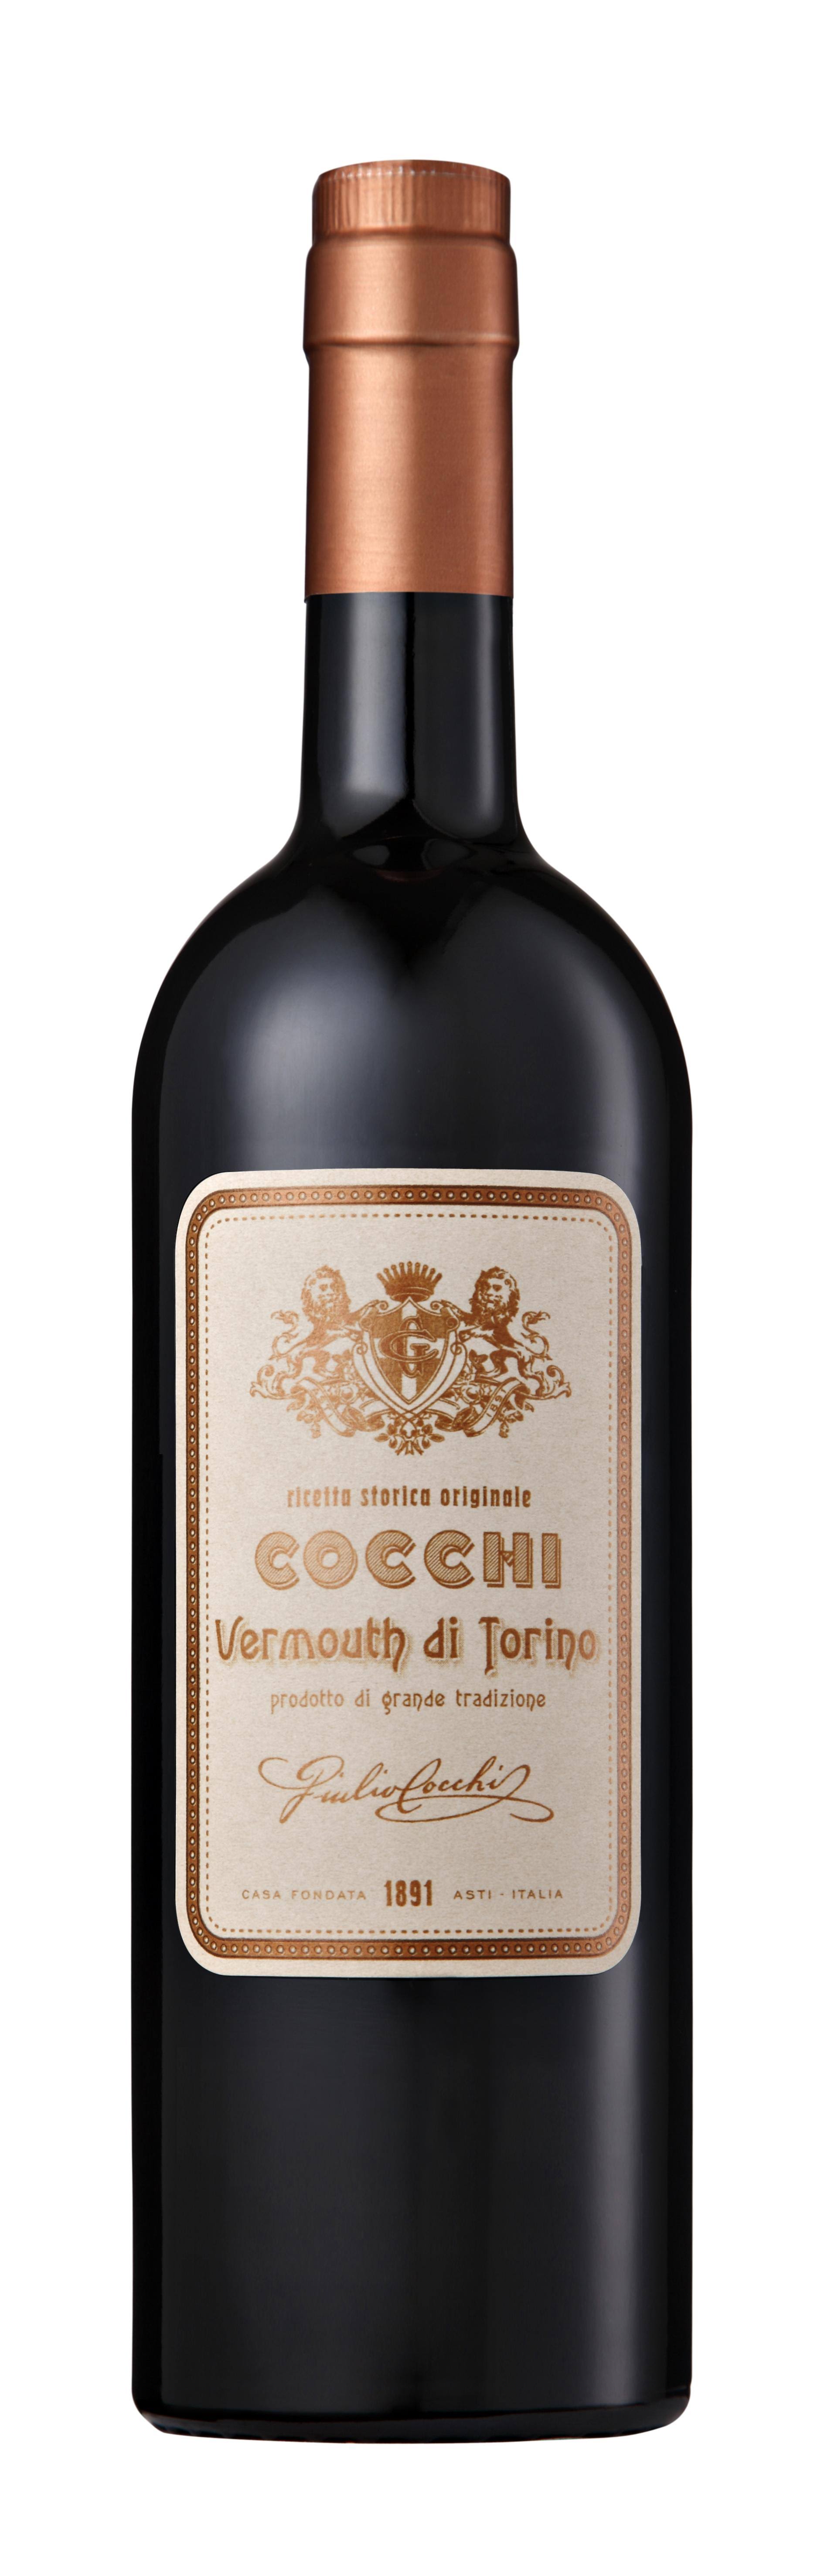 Cocchi's Vermouth di Torino - 750ml